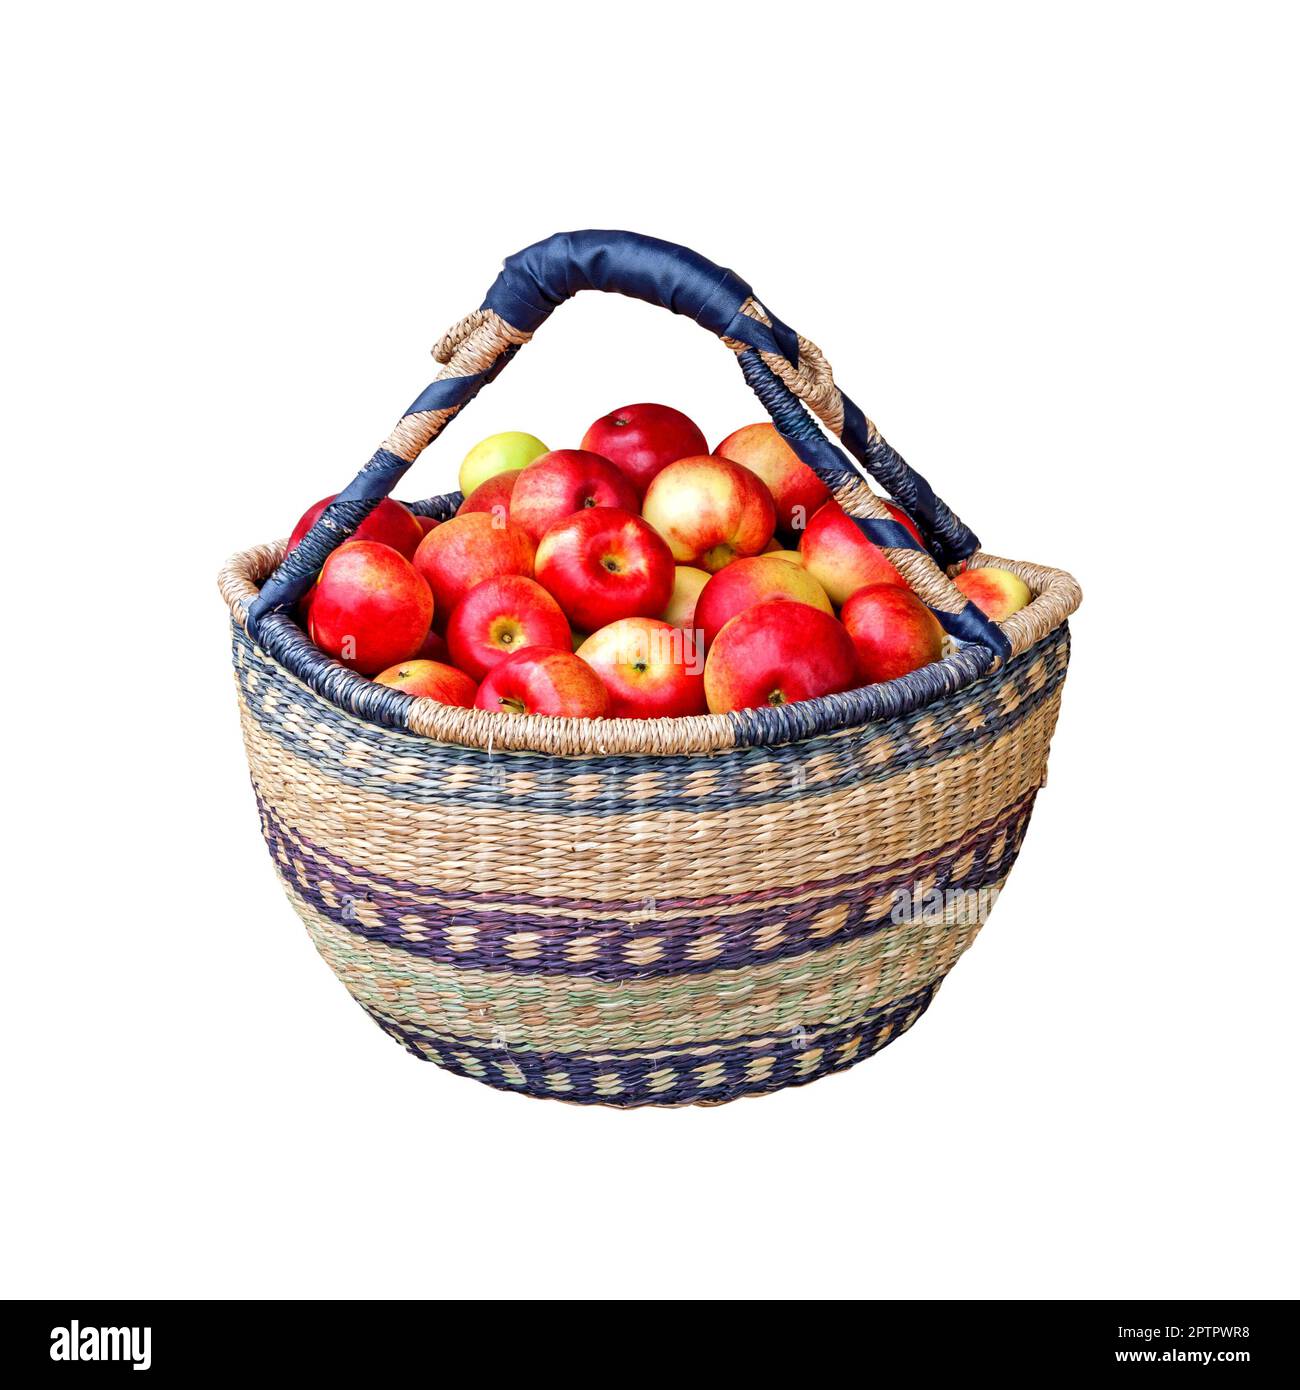 Mele rosse fresche in un cestino isolato su sfondo bianco Foto Stock